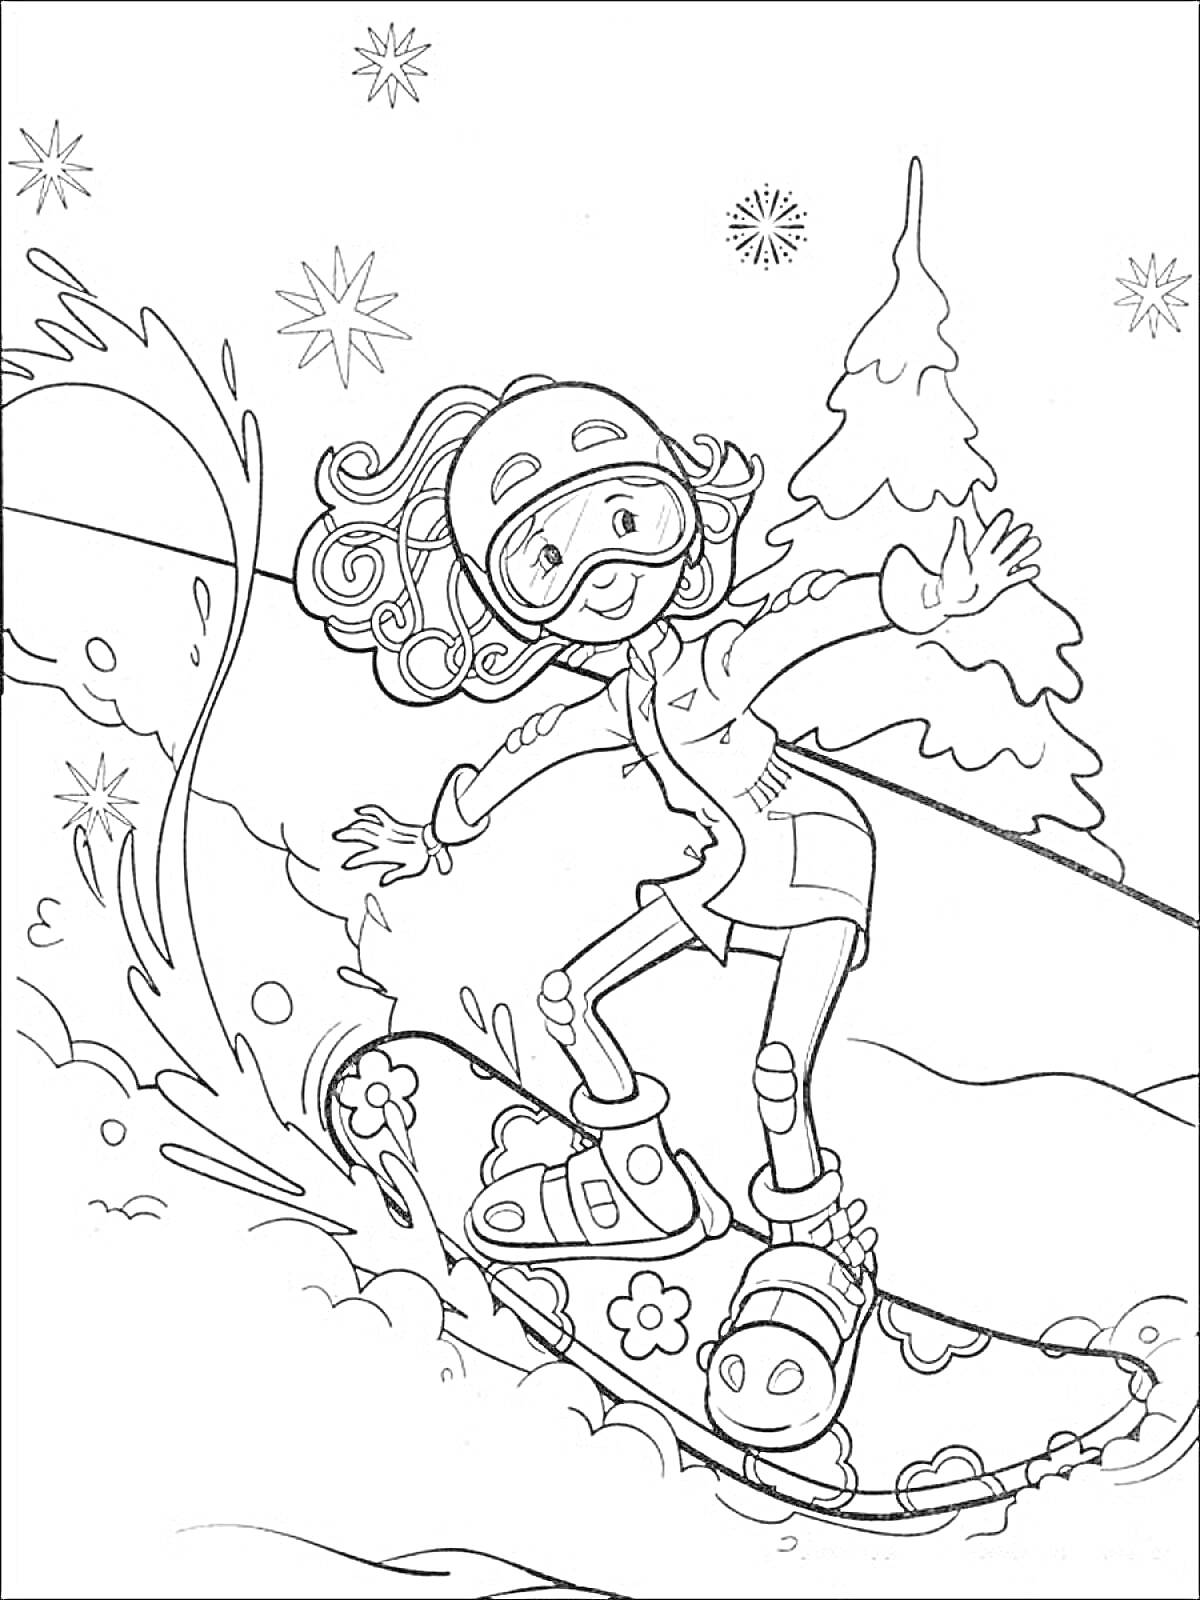 Девочка на сноуборде, едущая по снежной трассе, с деревьями и снежинками на фоне.